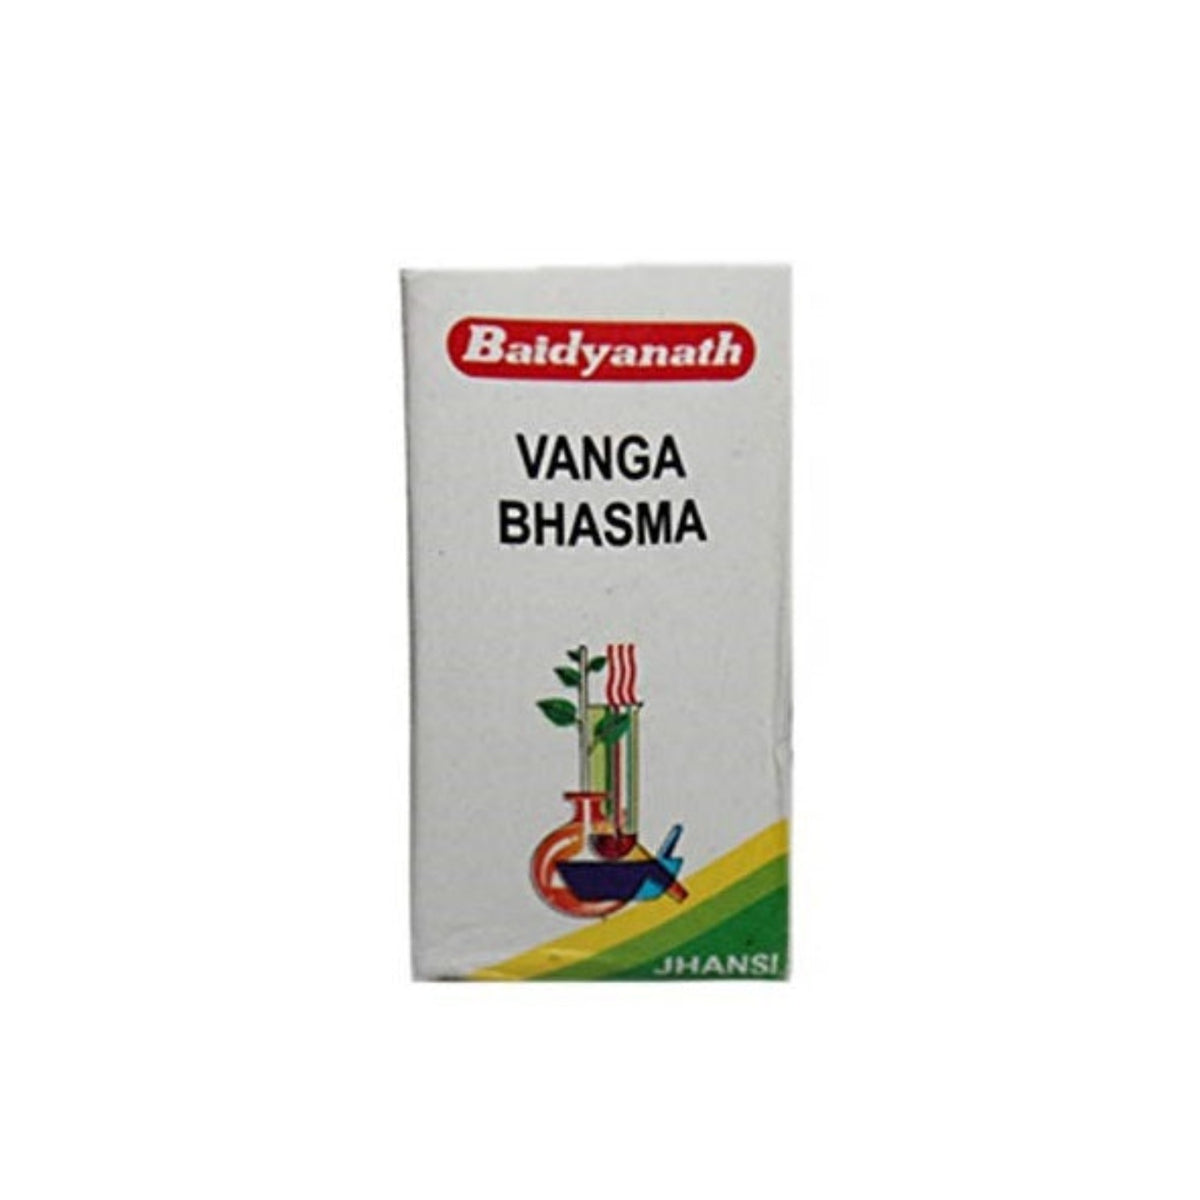 Baidyanath Ayurvedic (Jhansi) Vanga Bhasma Powder